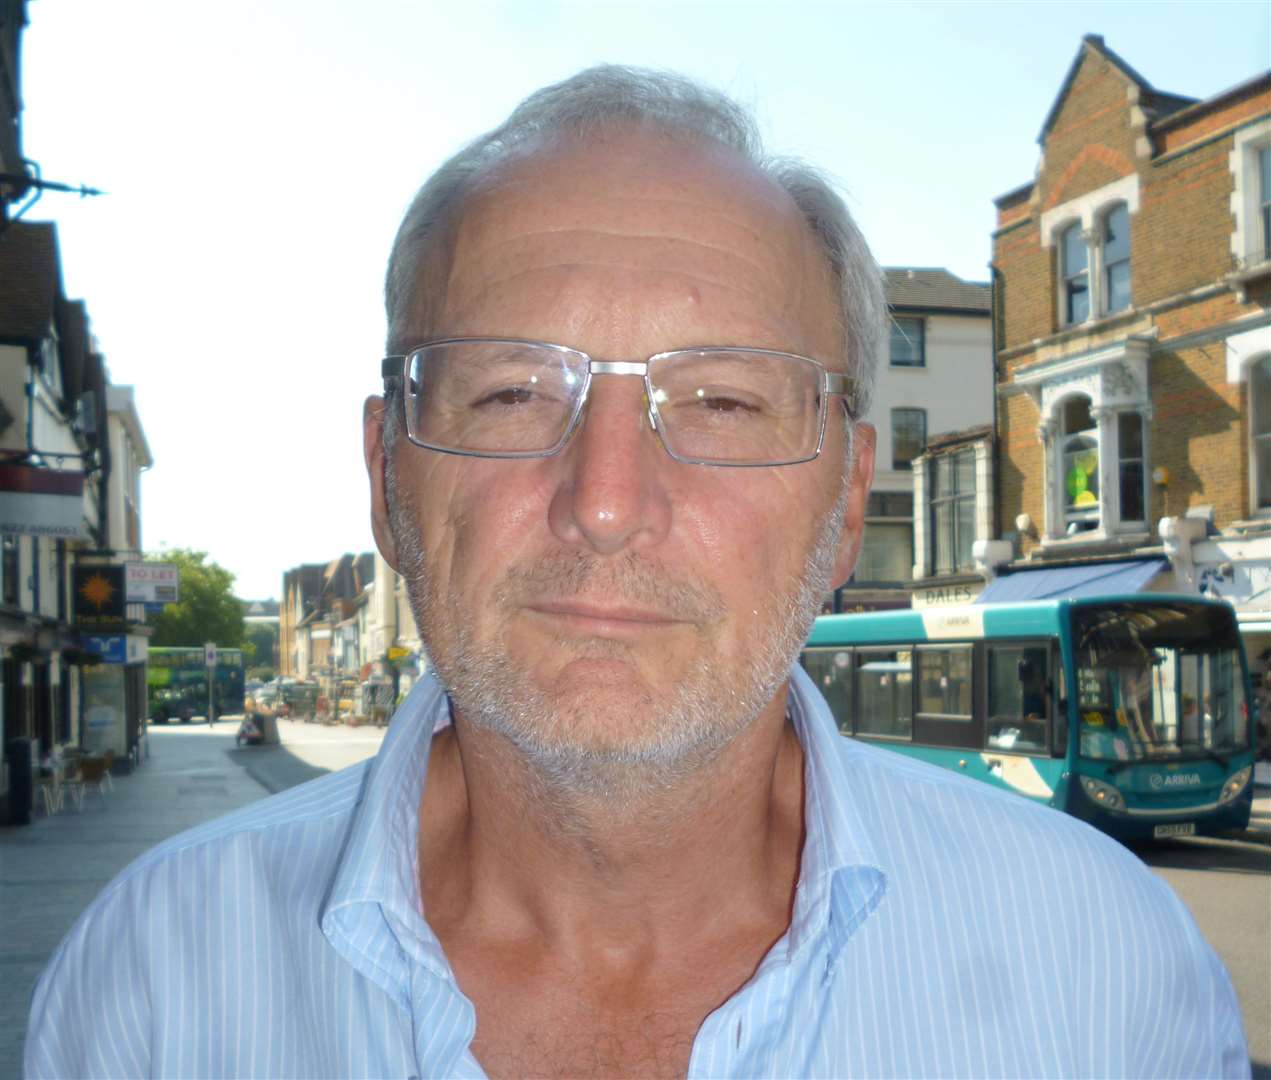 Paul McCreery, representing Lenham Parish Council